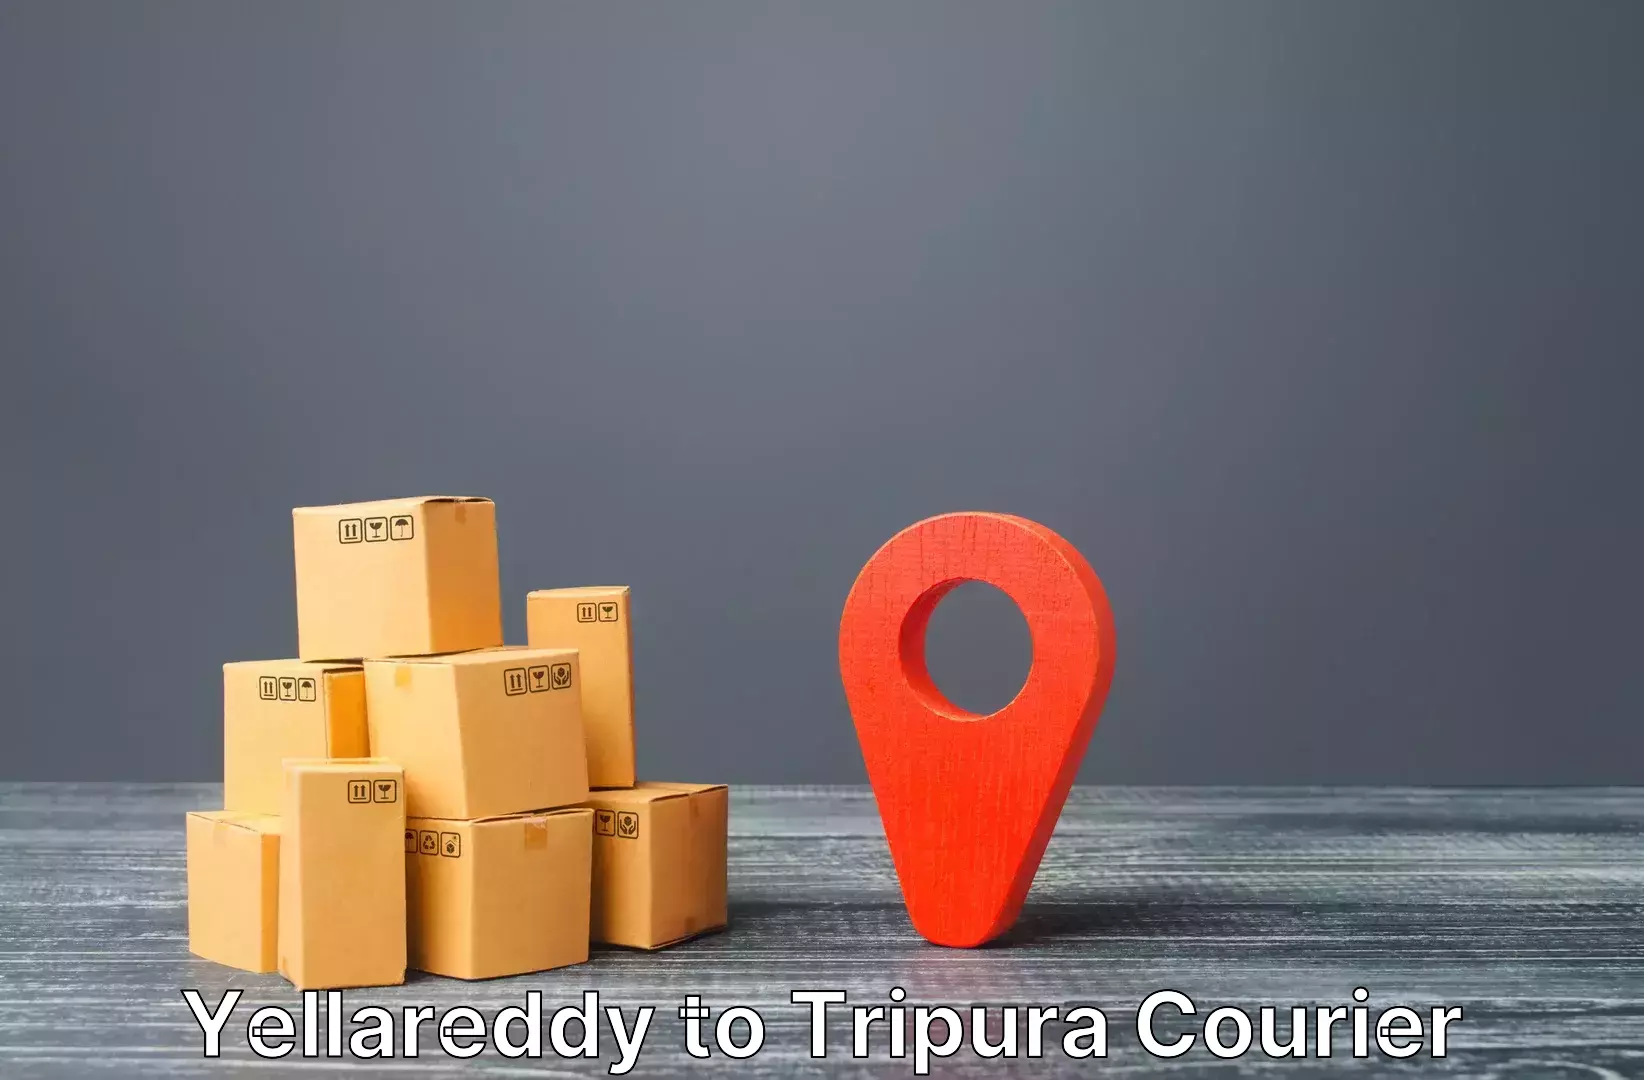 Door-to-door baggage service Yellareddy to Tripura